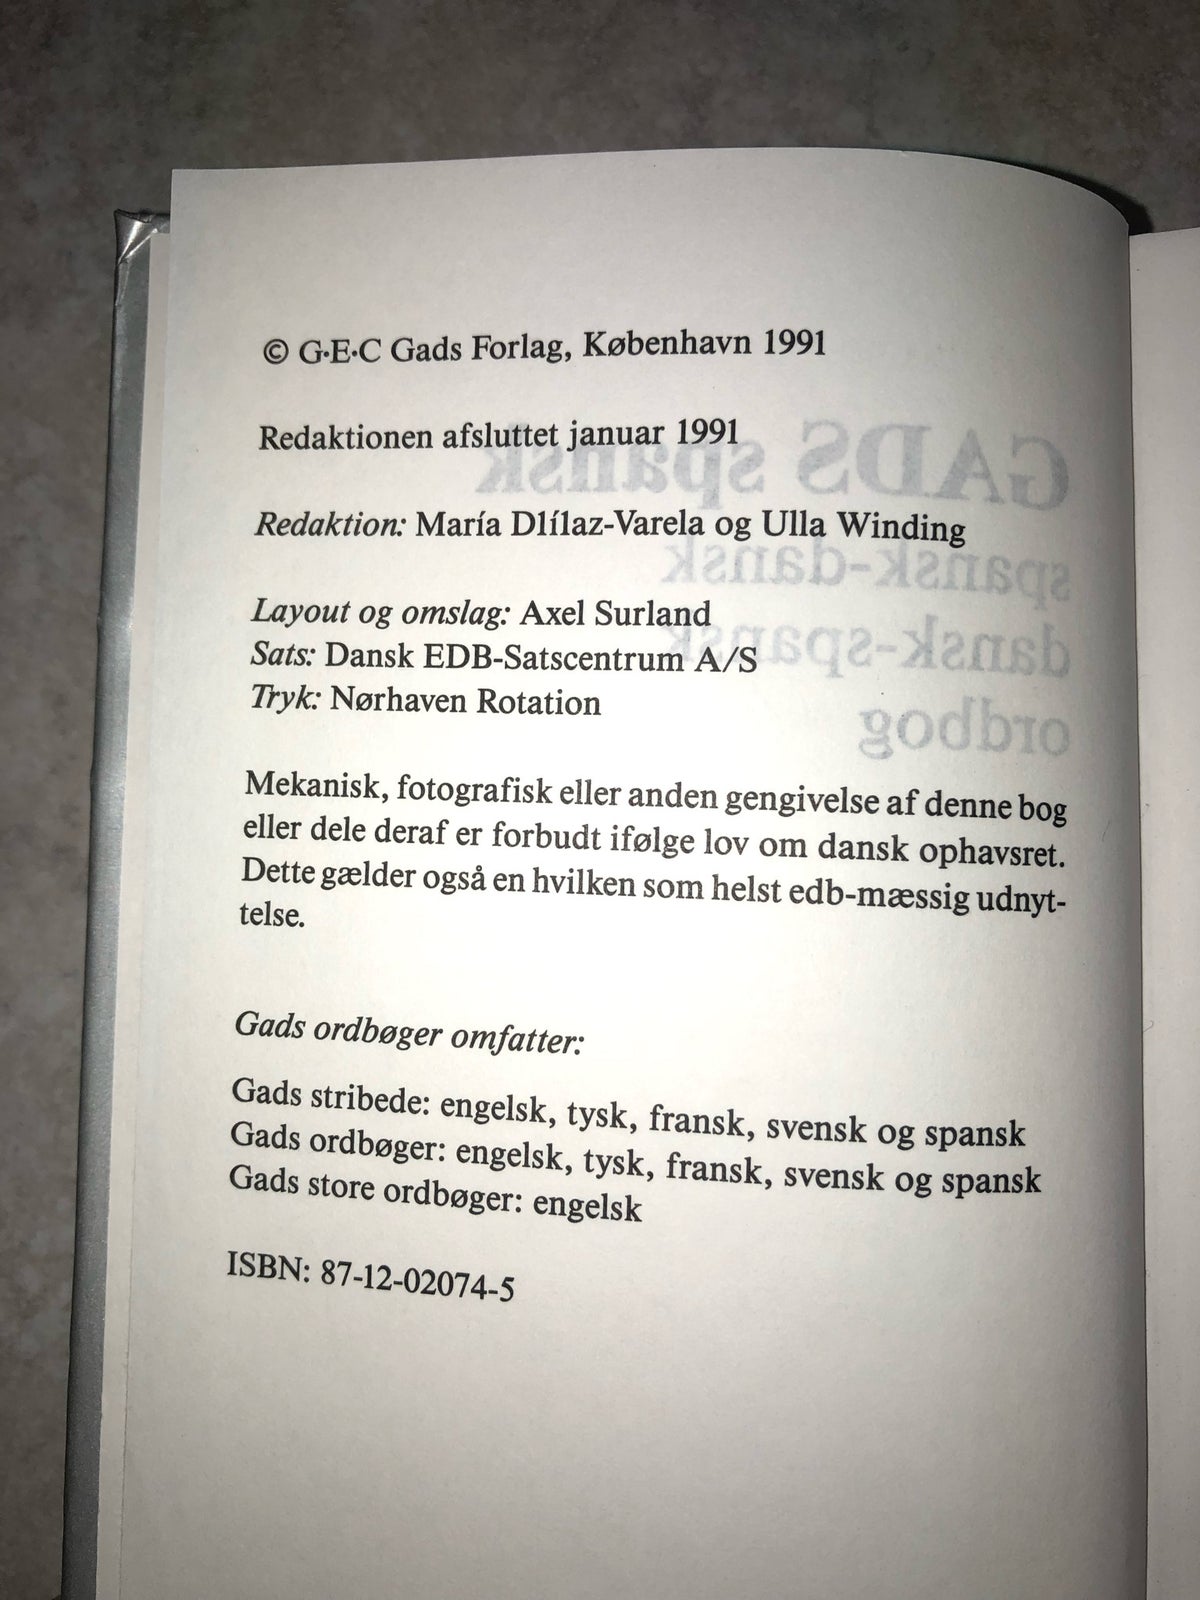 Spansk dansk ordbog, Gad, år 1991